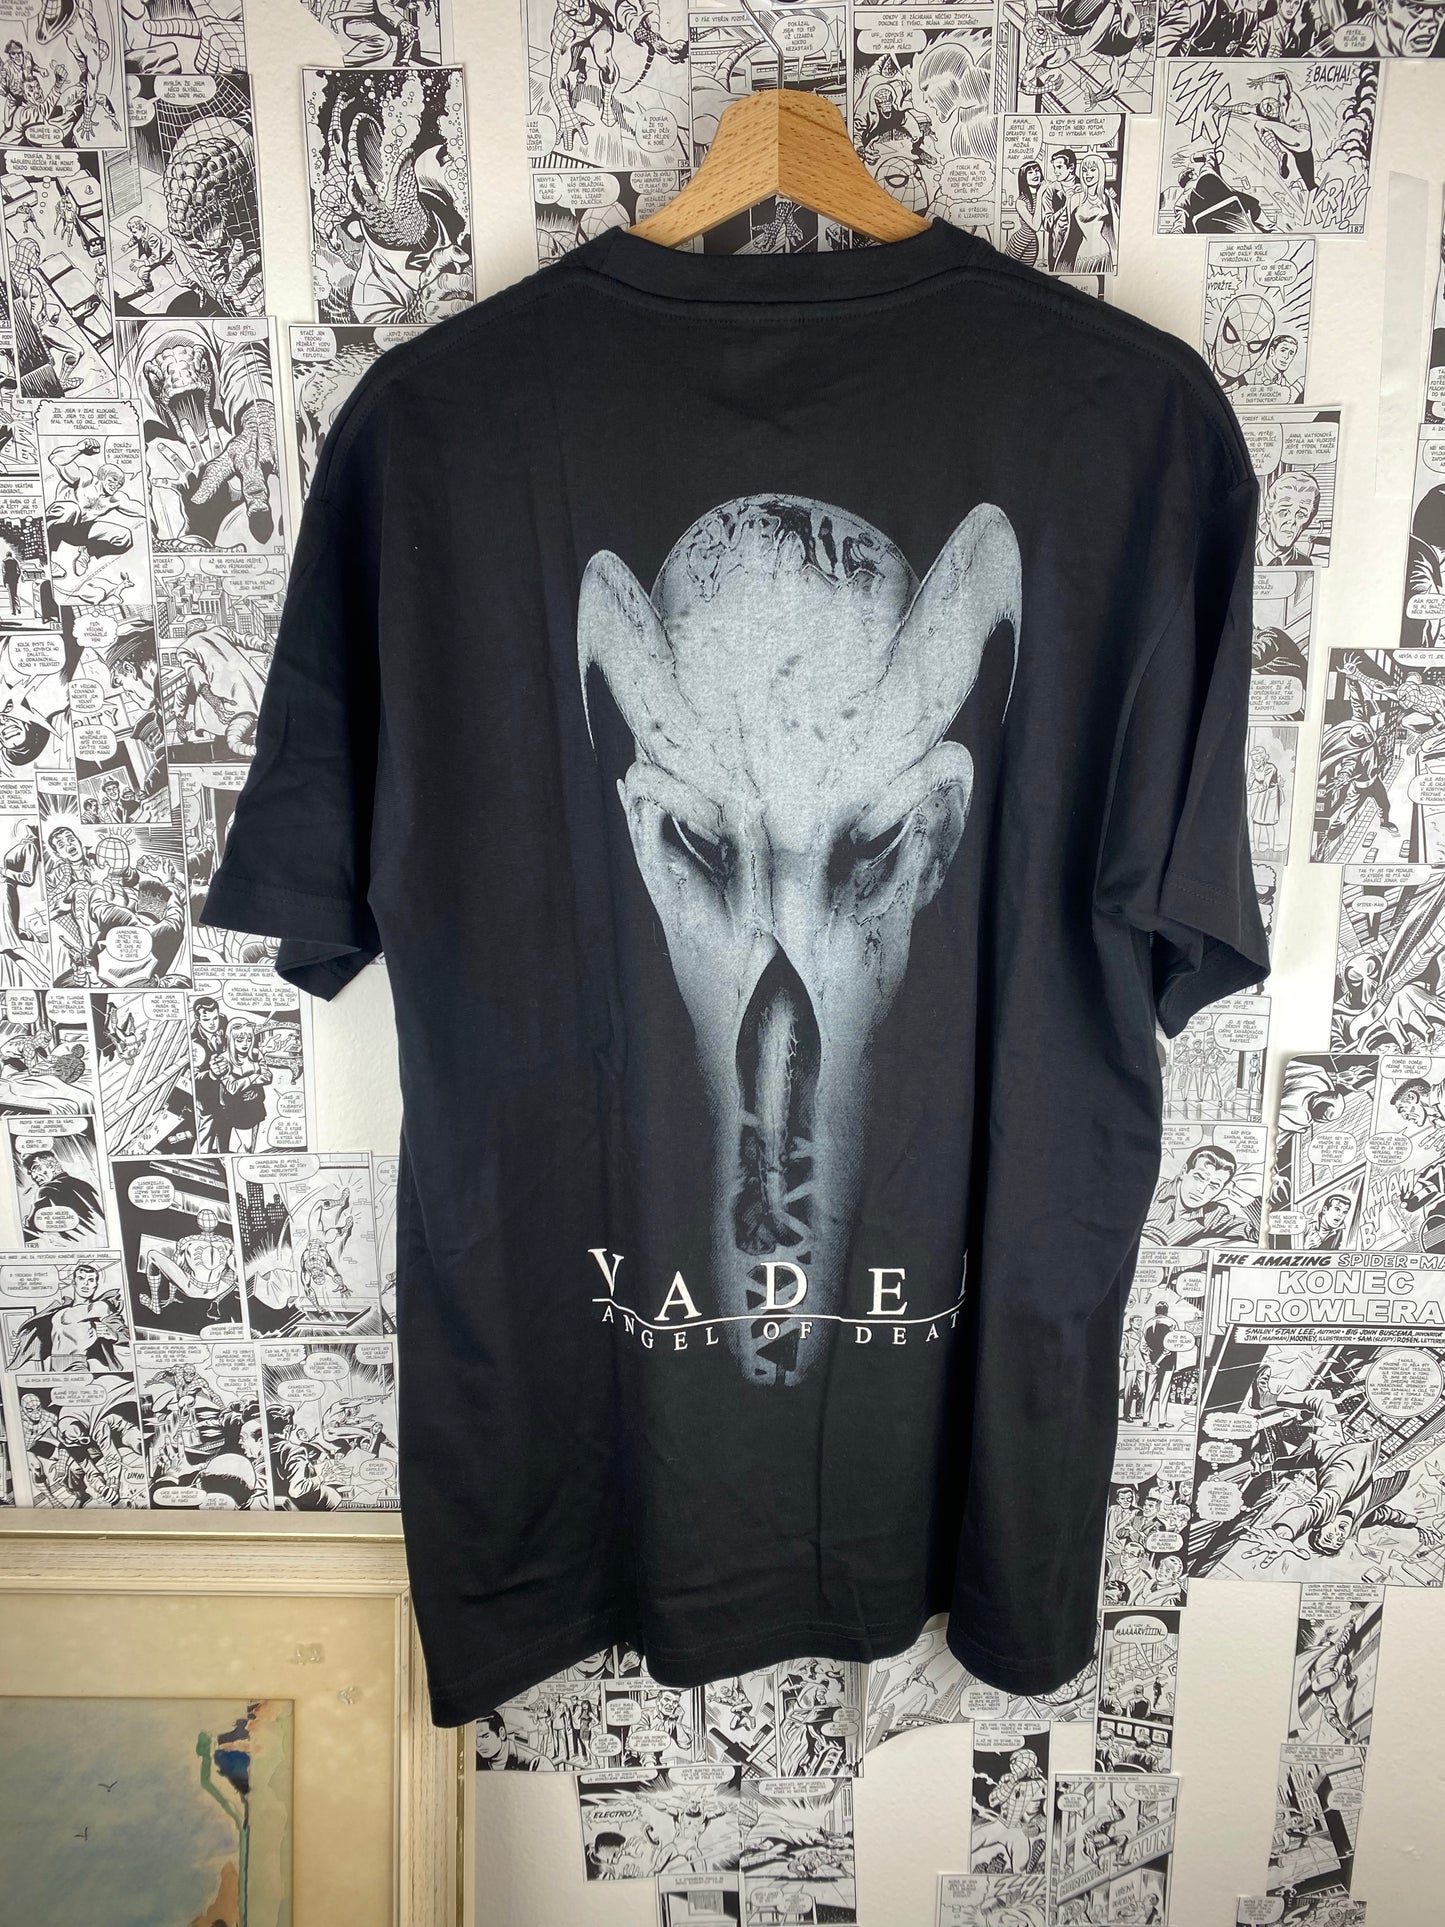 Vintage Vader “Angel of Death” 2002 t-shirt - size L